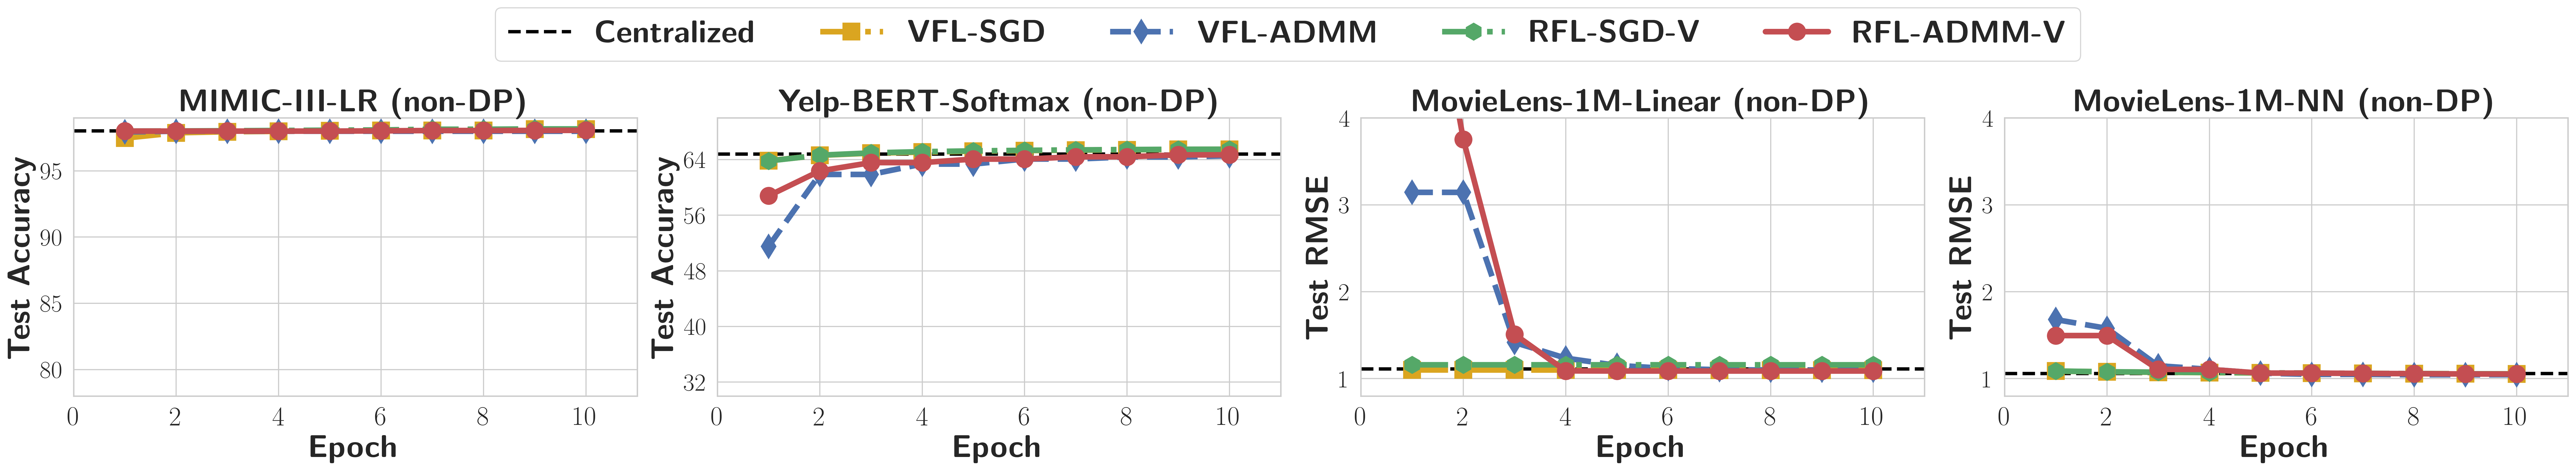 convergence_rates_VFL(non-DP)